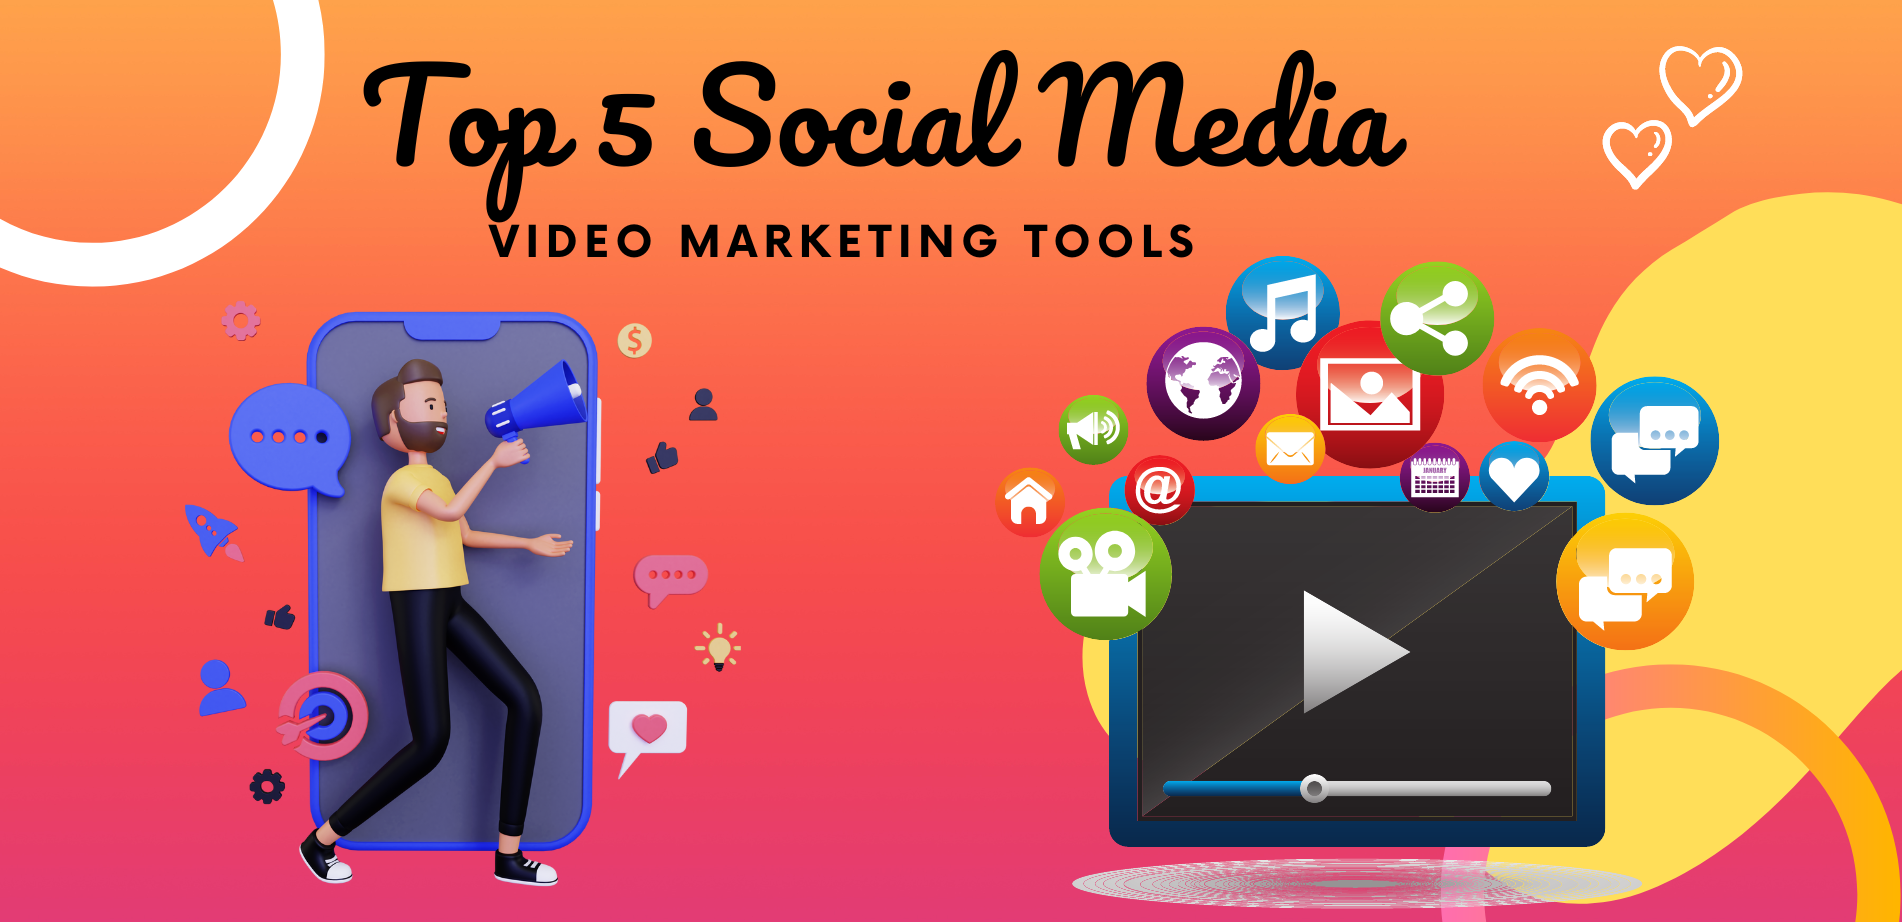 Top 5 Social Media Video Marketing Tools